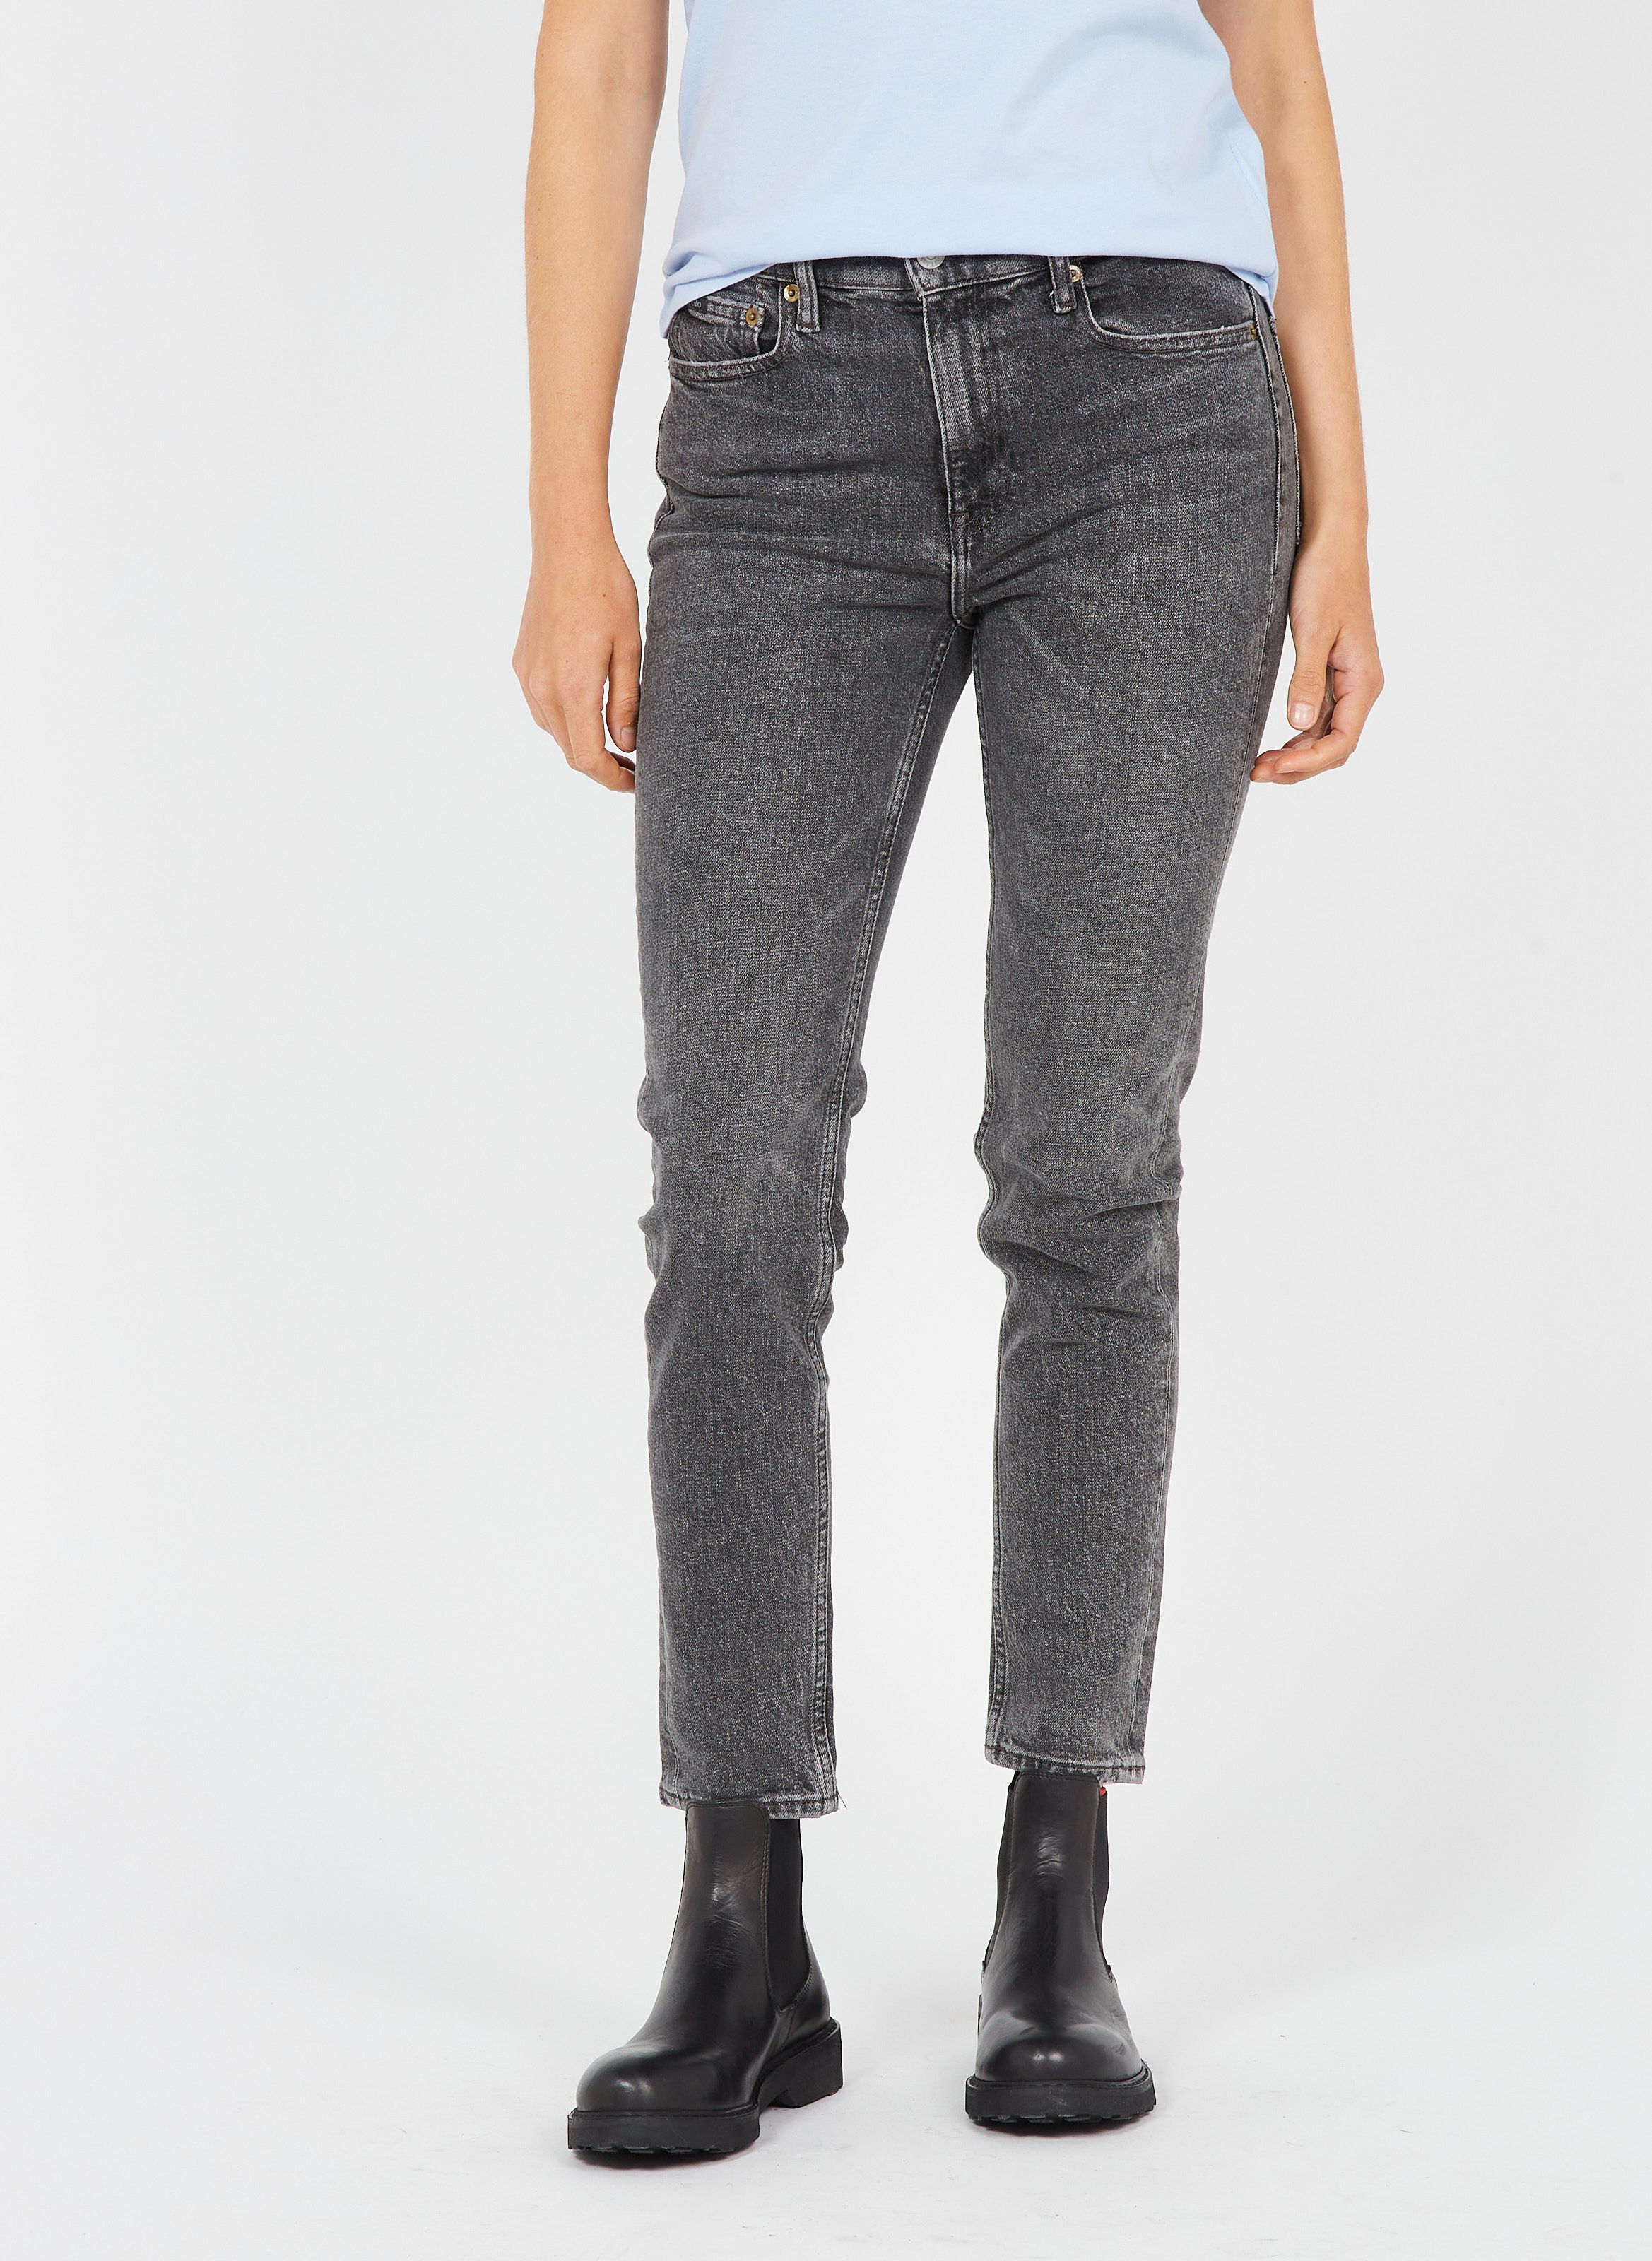 Ralph Lauren Femme Vêtements Pantalons & Jeans Jeans Taille haute Jean skinny 7/8 taille haute 